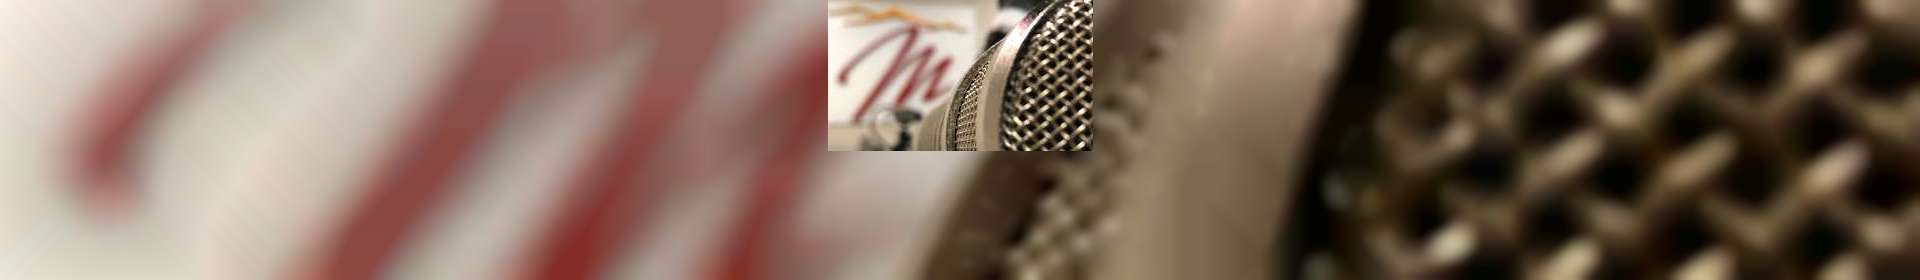 Entrevistas Rádio Maanaim - 2º Encontro dos Adolescentes em Vila Velha, ES